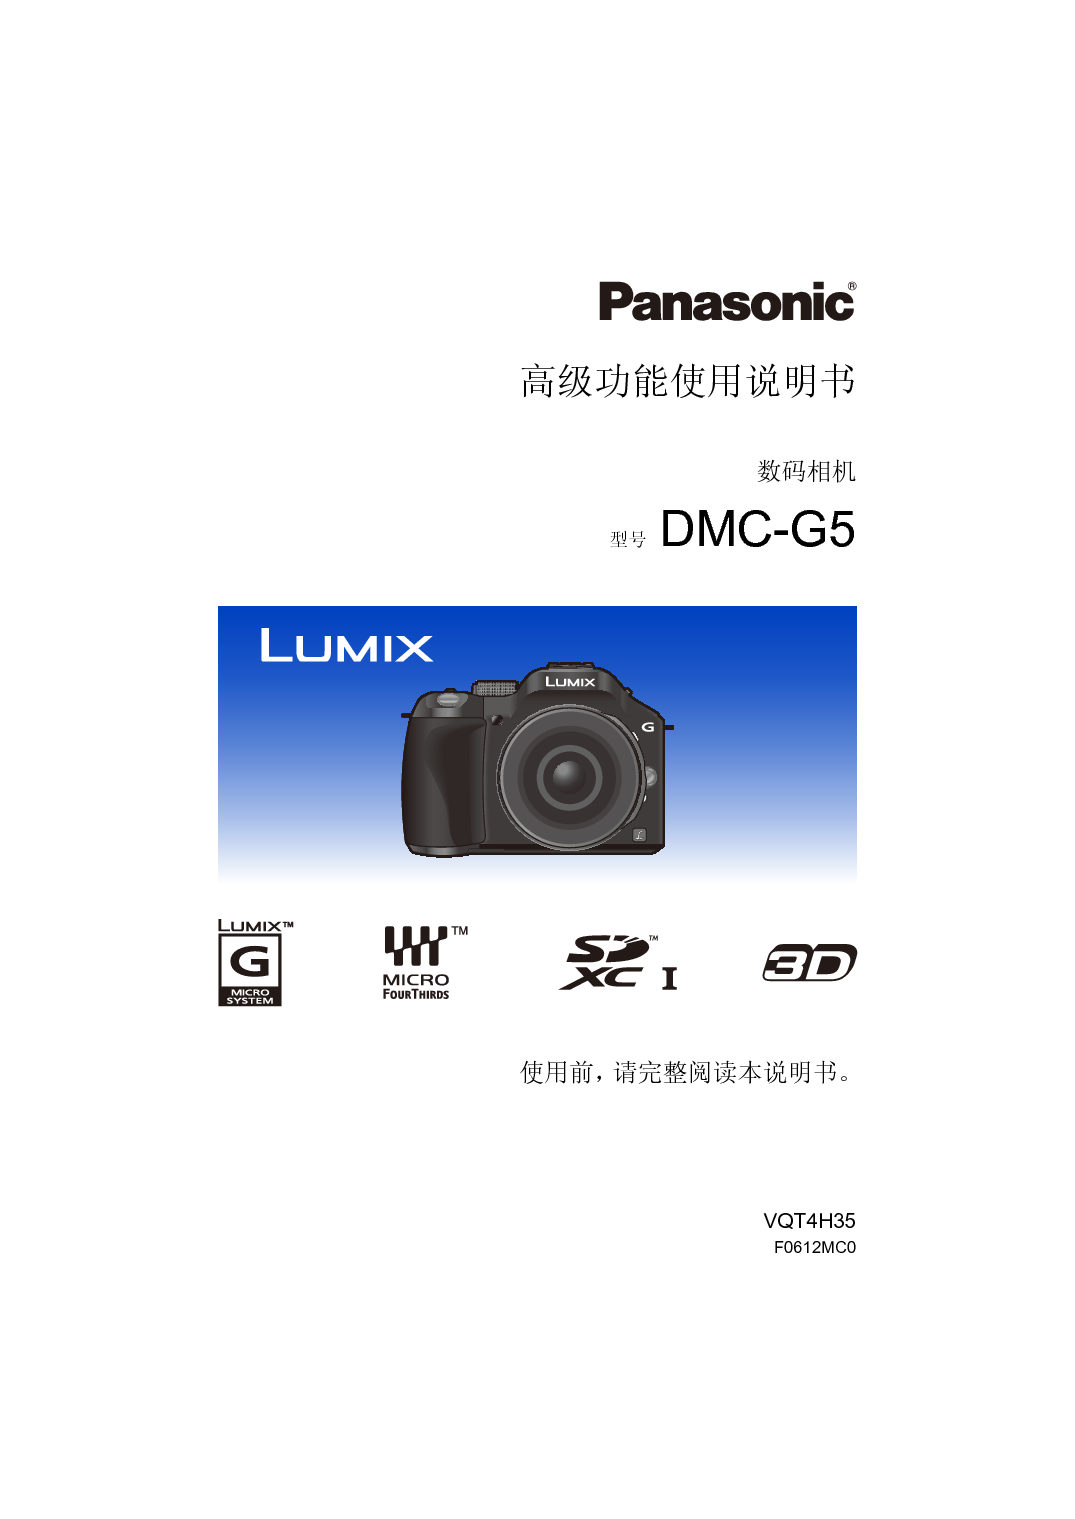 松下 Panasonic DMC-G5 高级说明书 封面